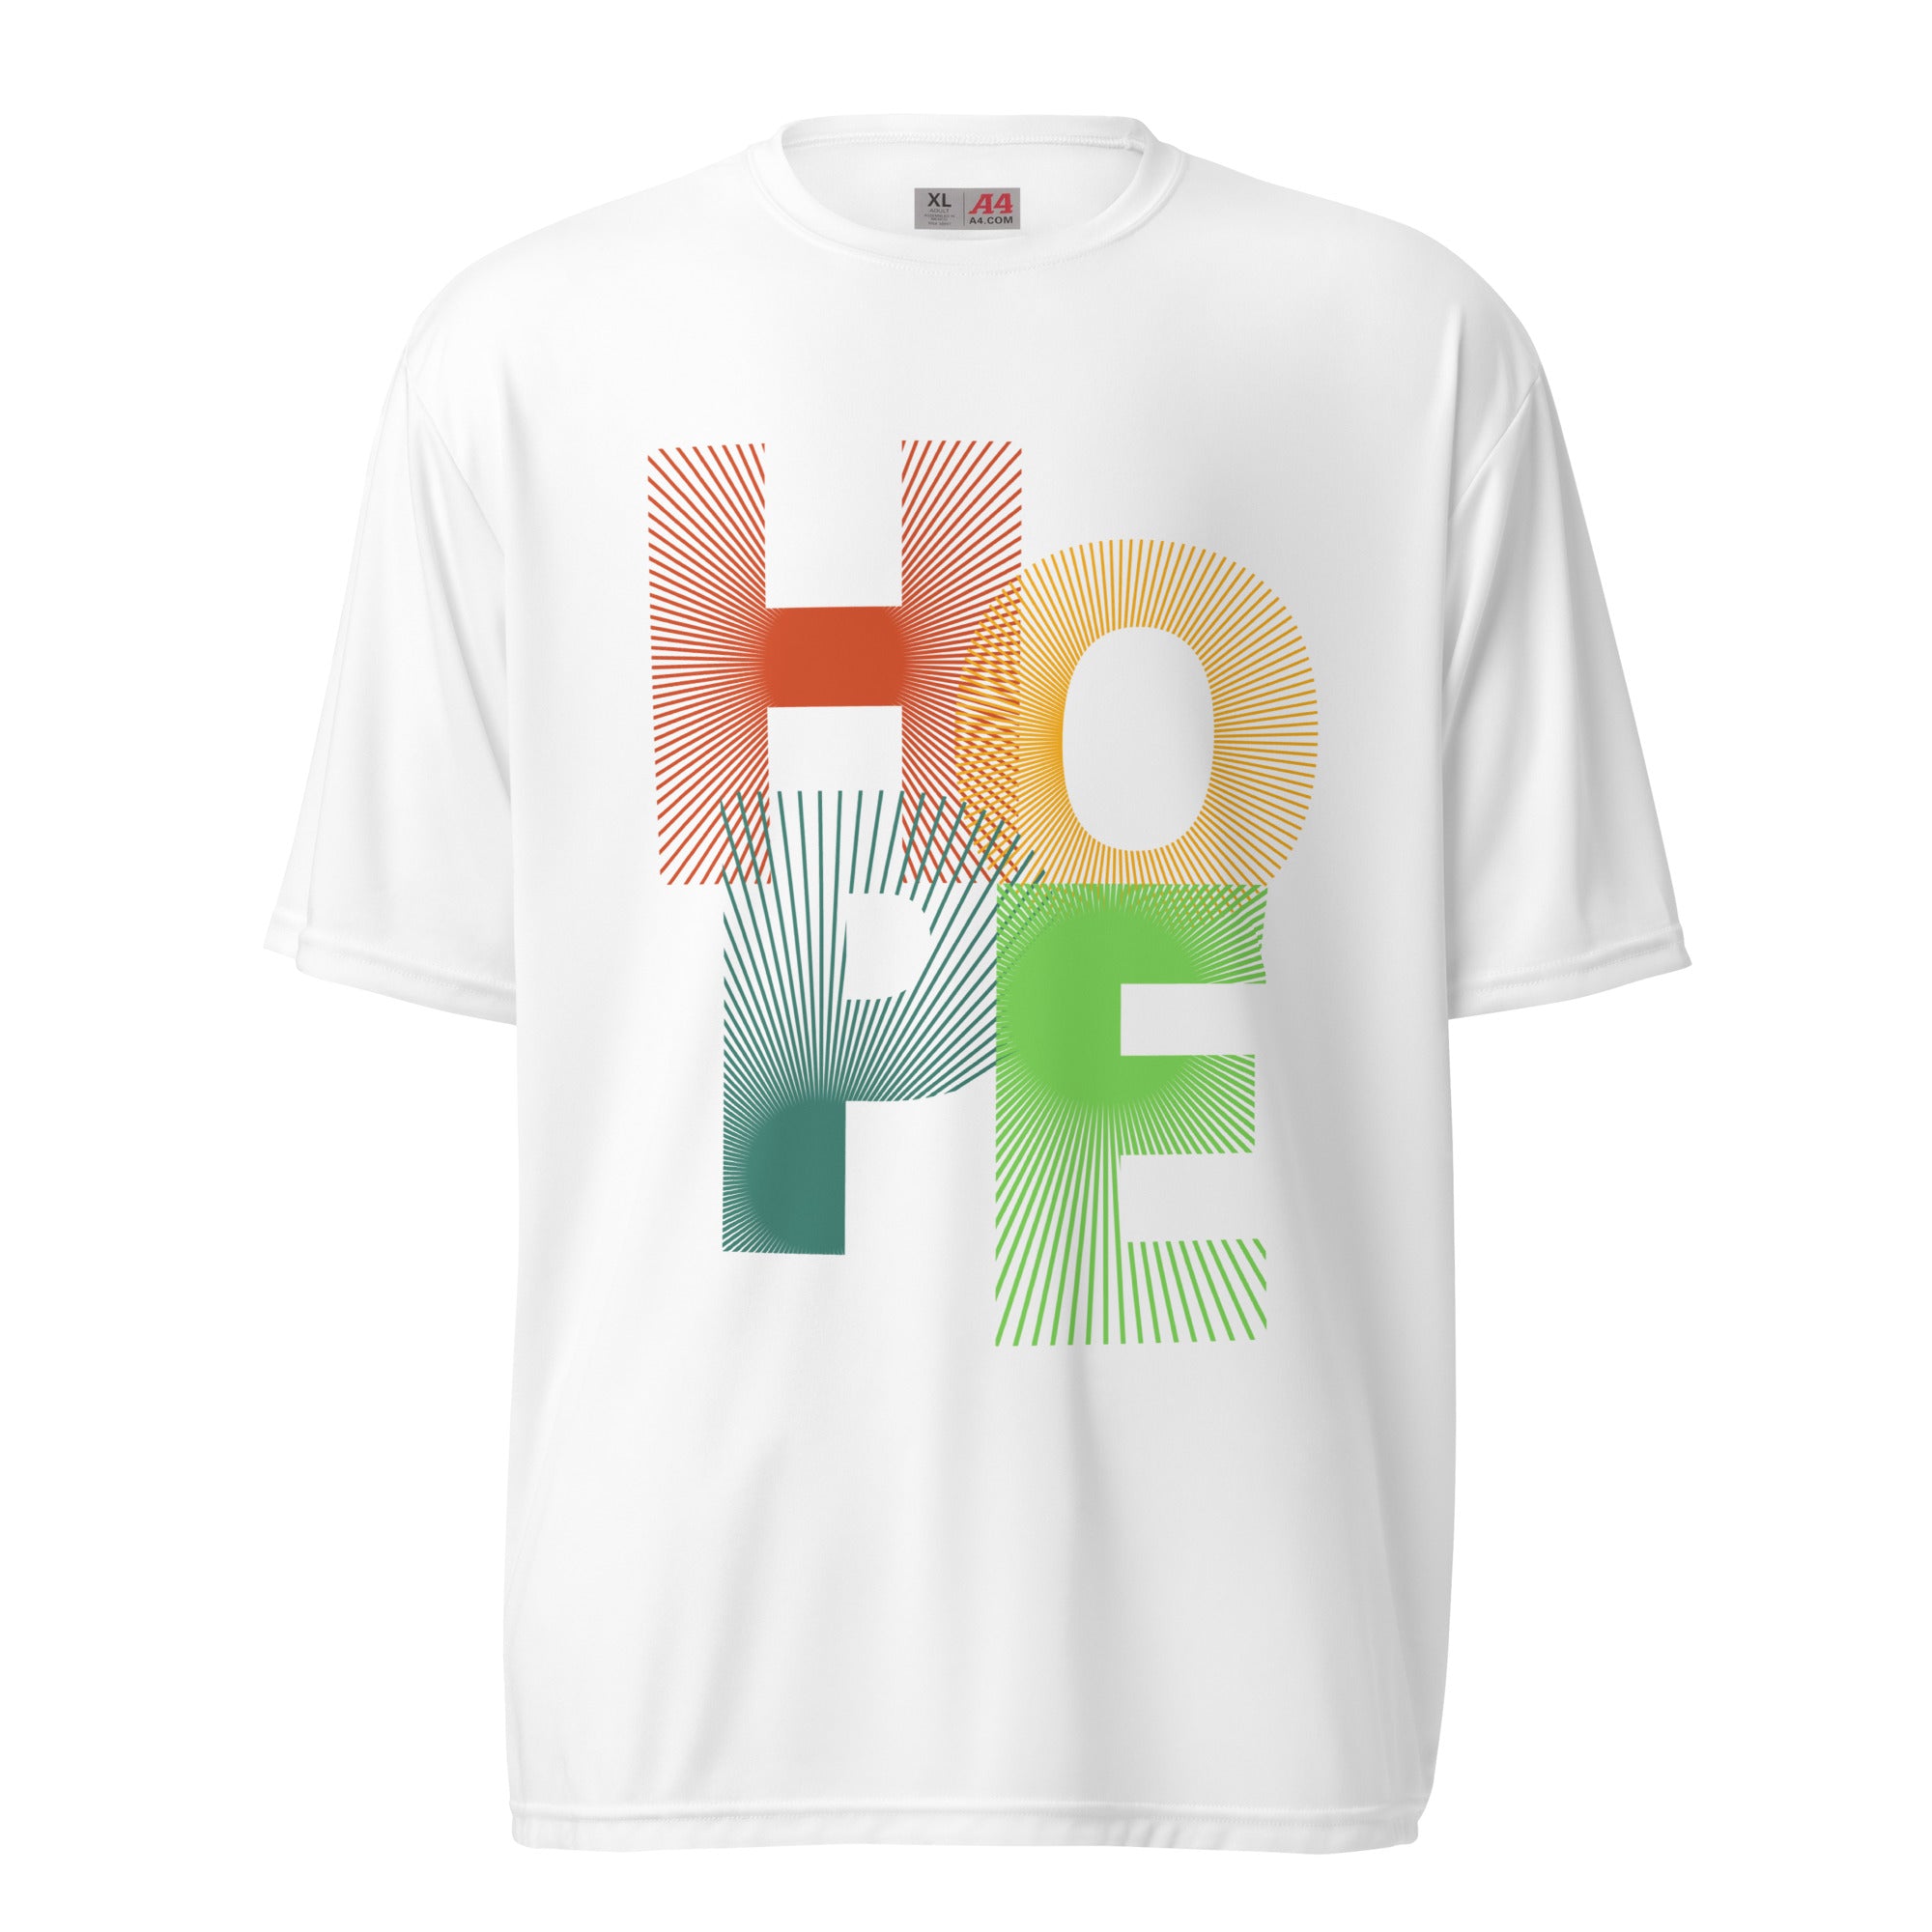 SORTYGO - Hope Men Performance T-Shirt in White